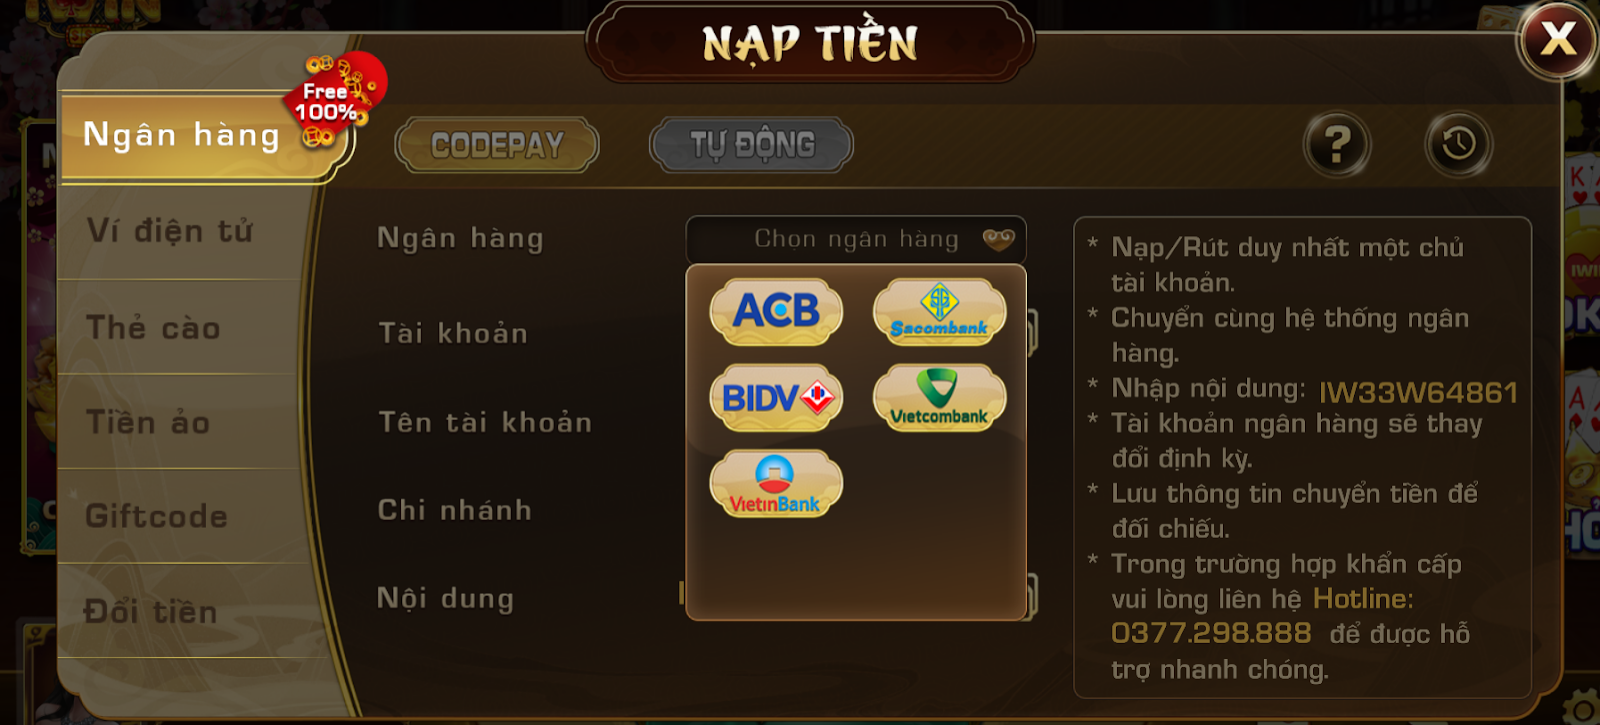 cach-rut-nap-tien-cong-game-iwin